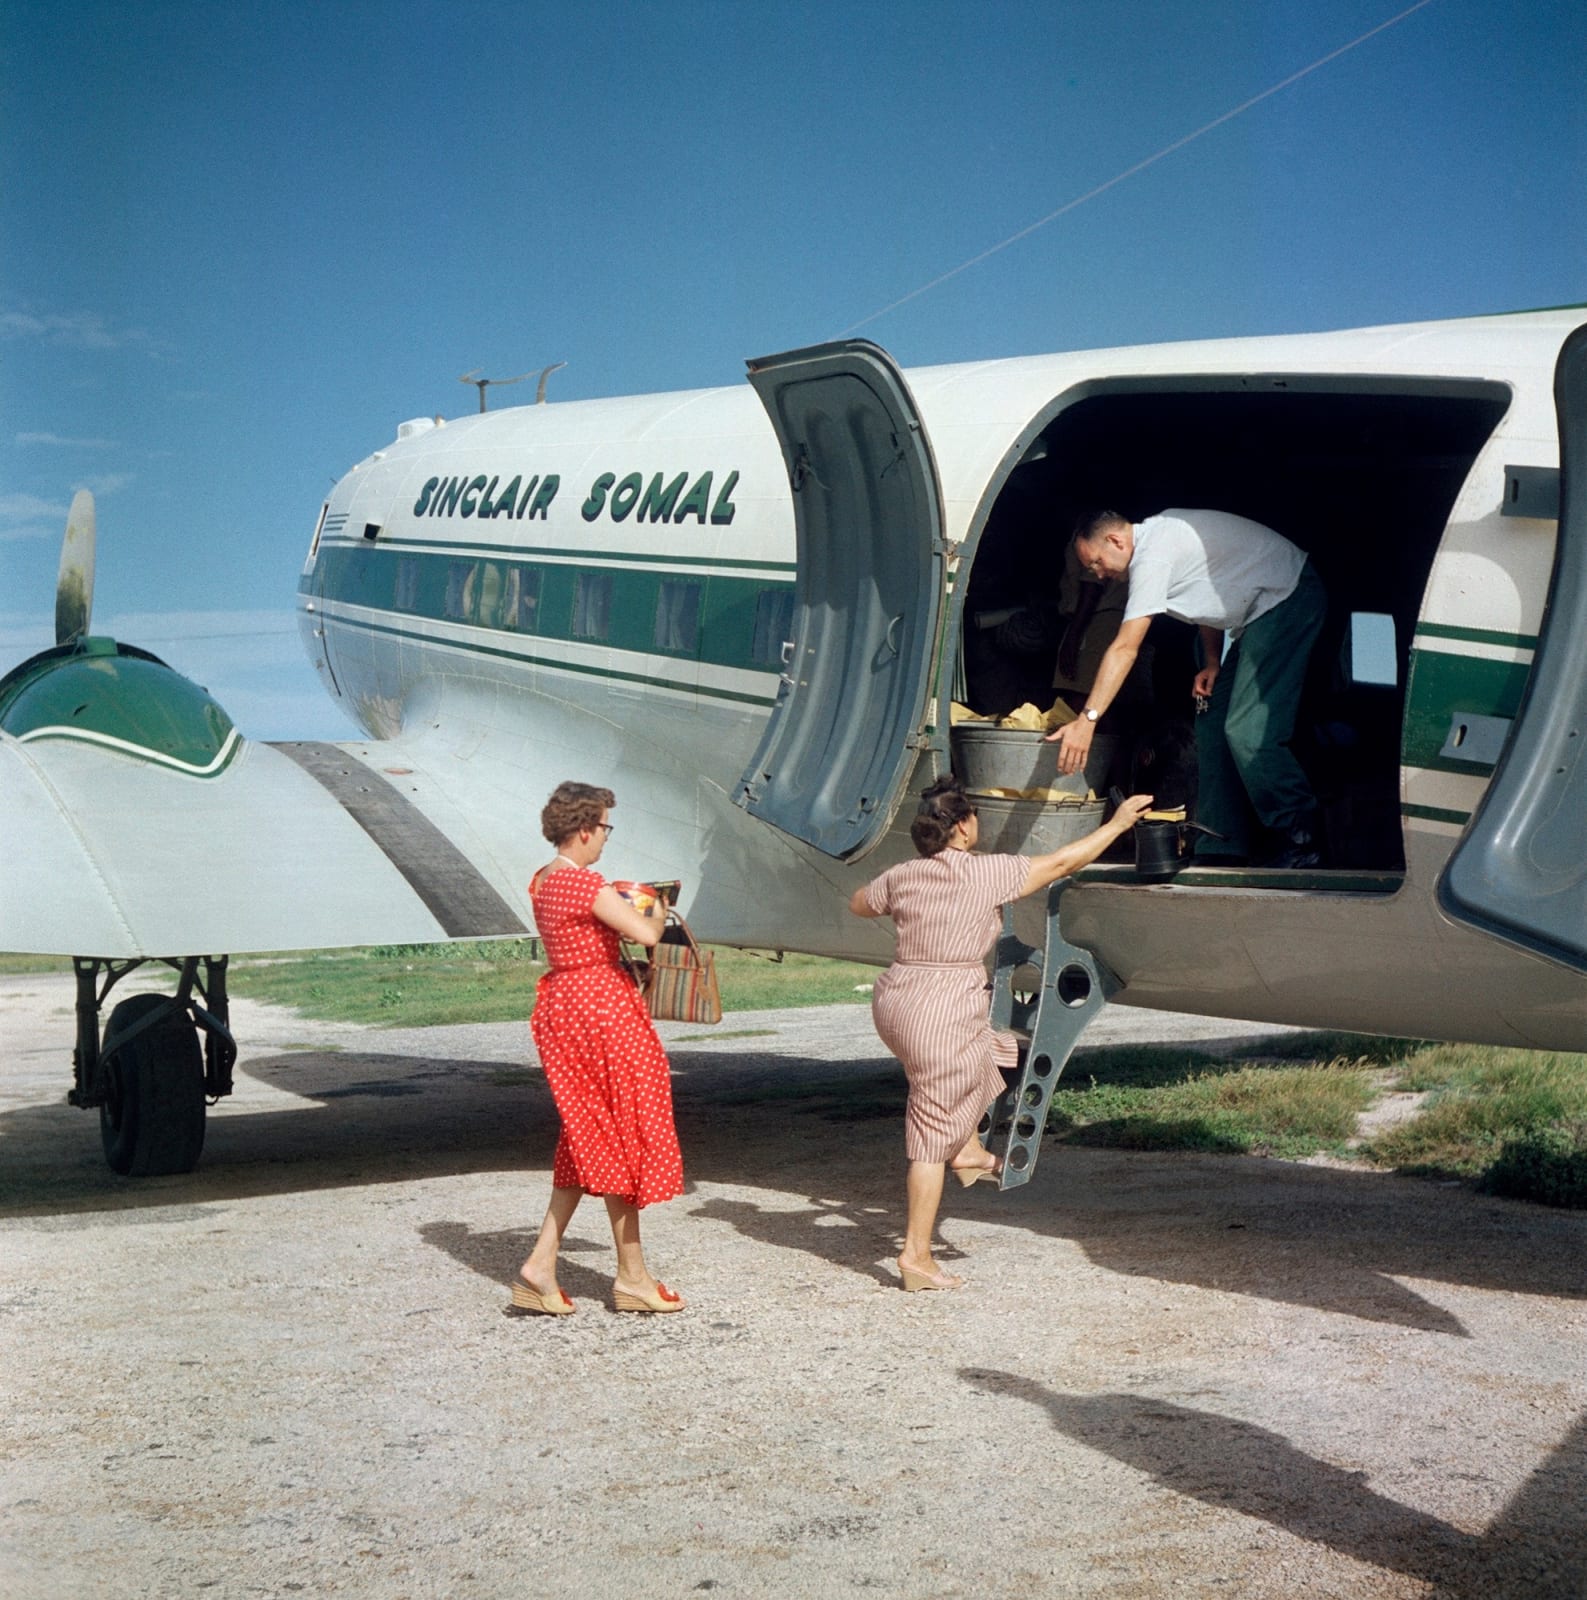 Todd Webb, Somalia Airplane Red Dress, Sinclair Somal, 1958